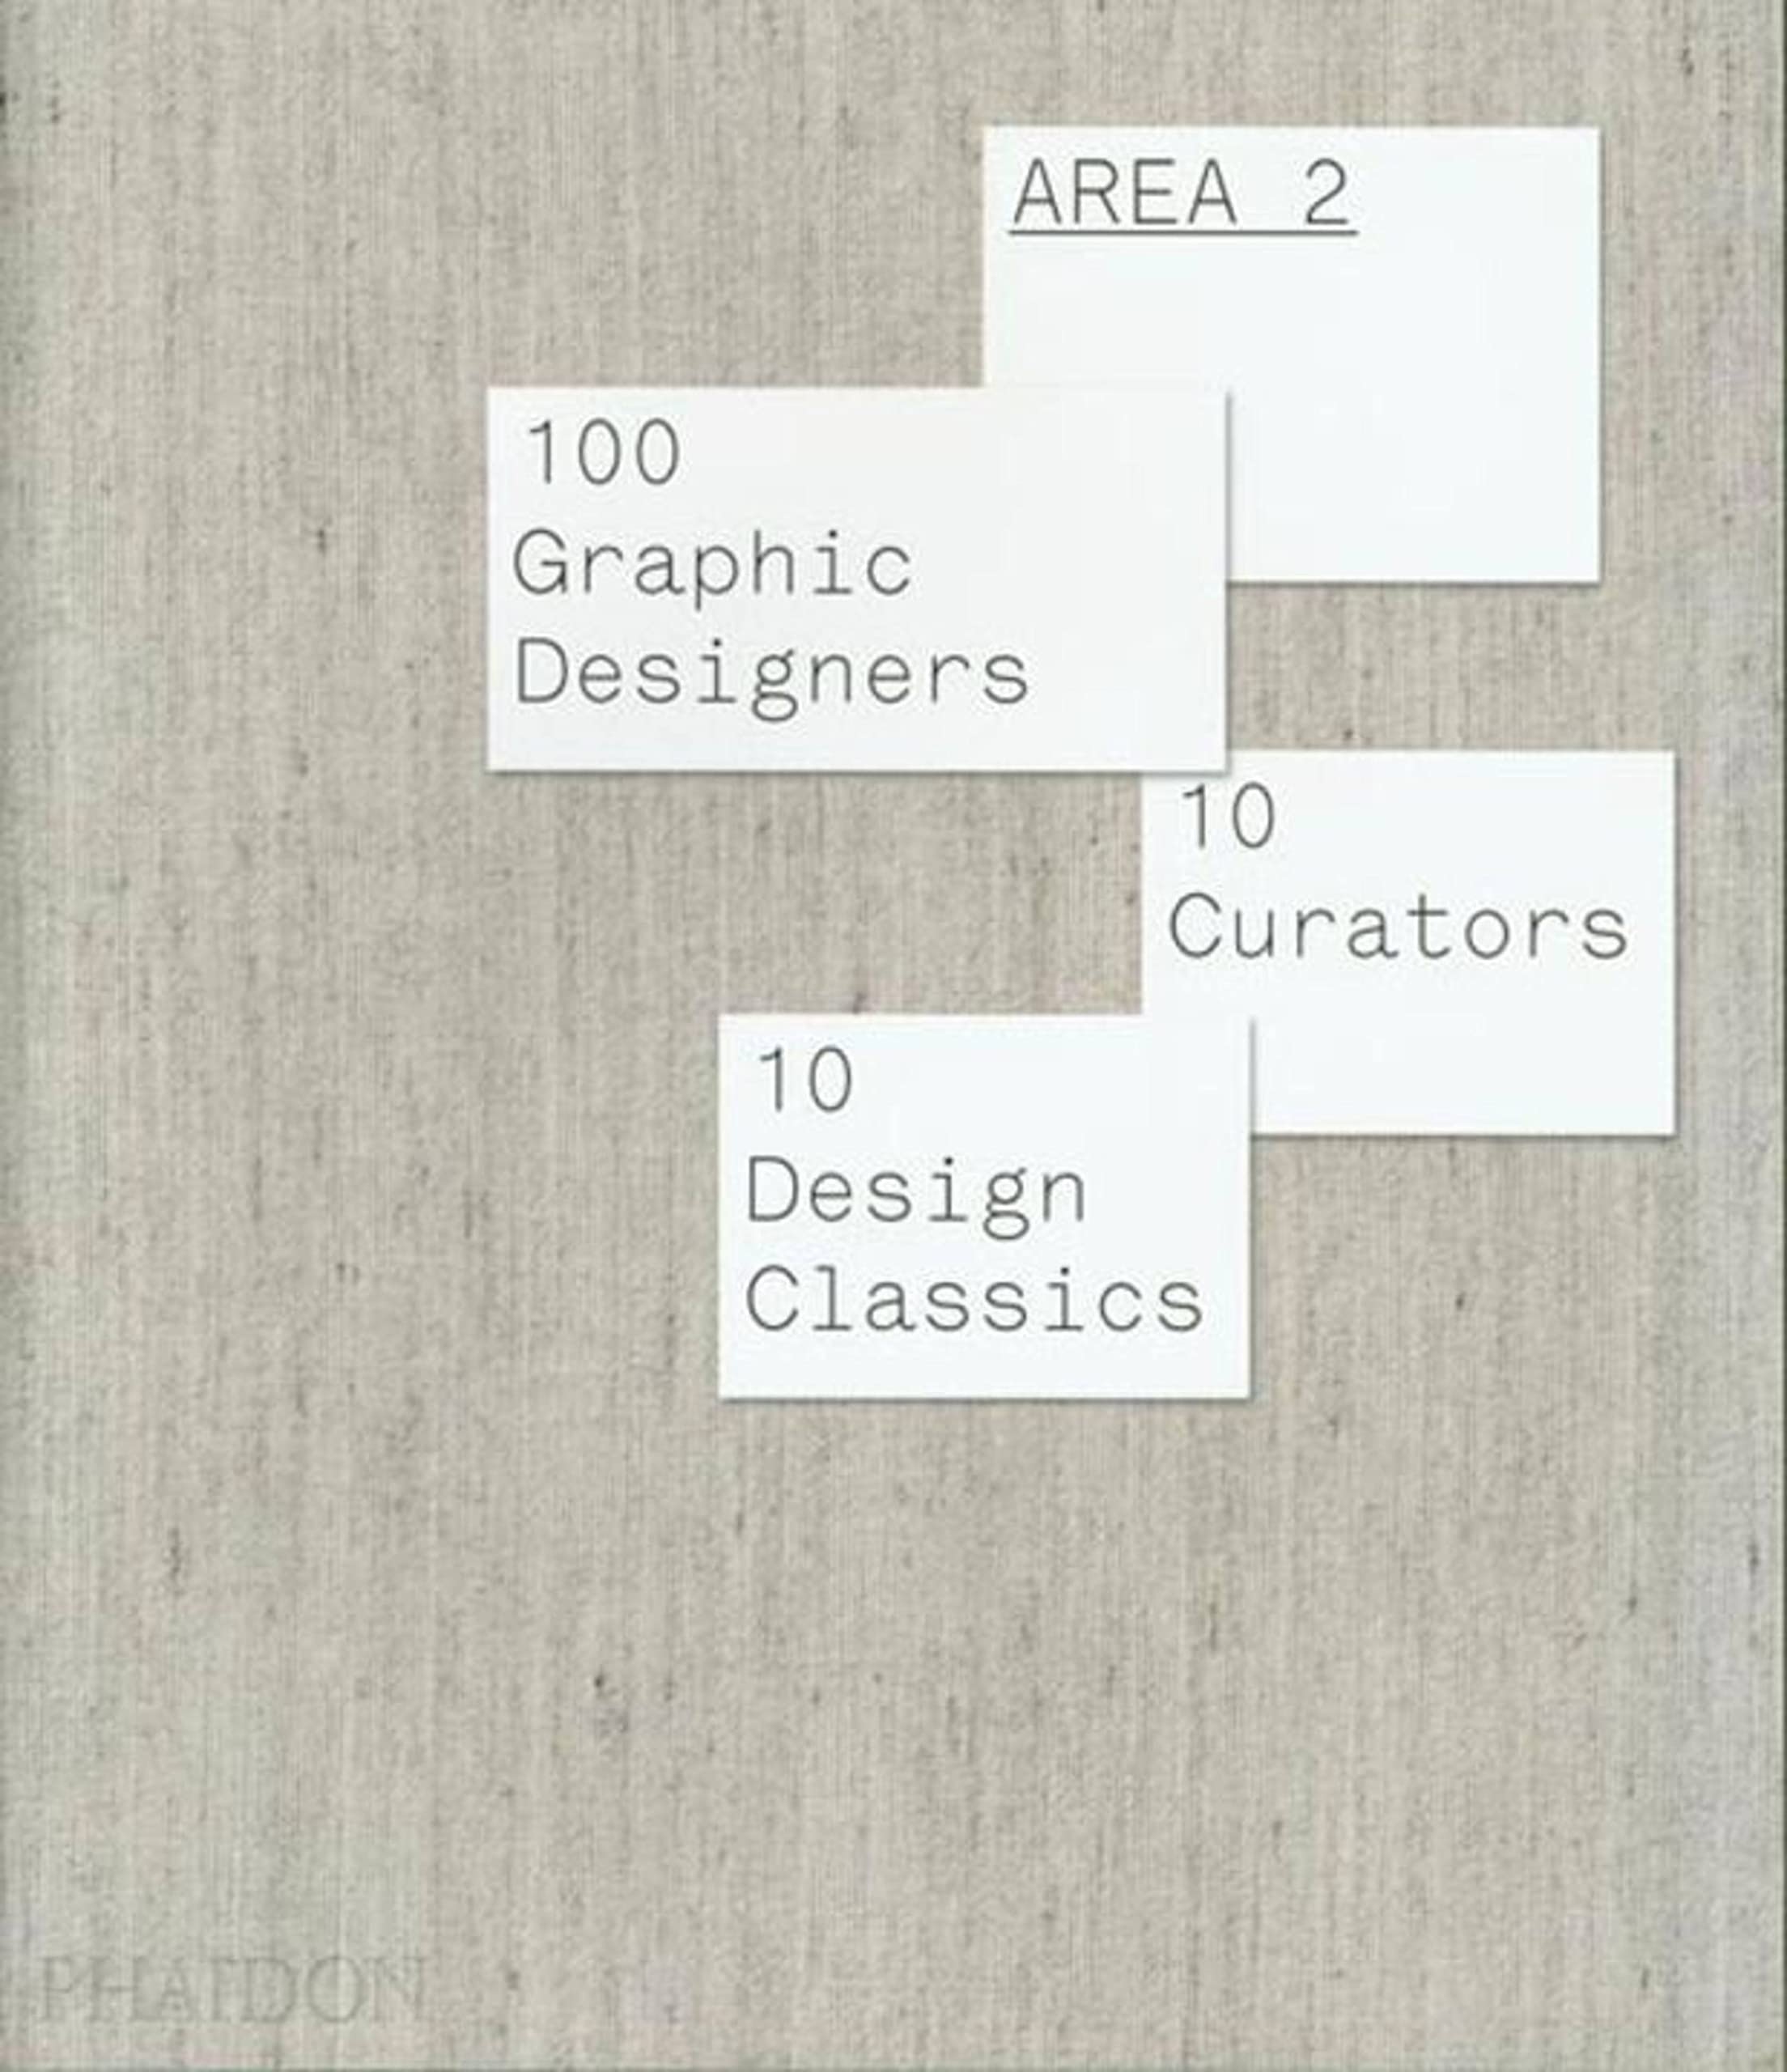  - Area 2: 100 Graphic Designers, 10 Curators, 10 Design Classics